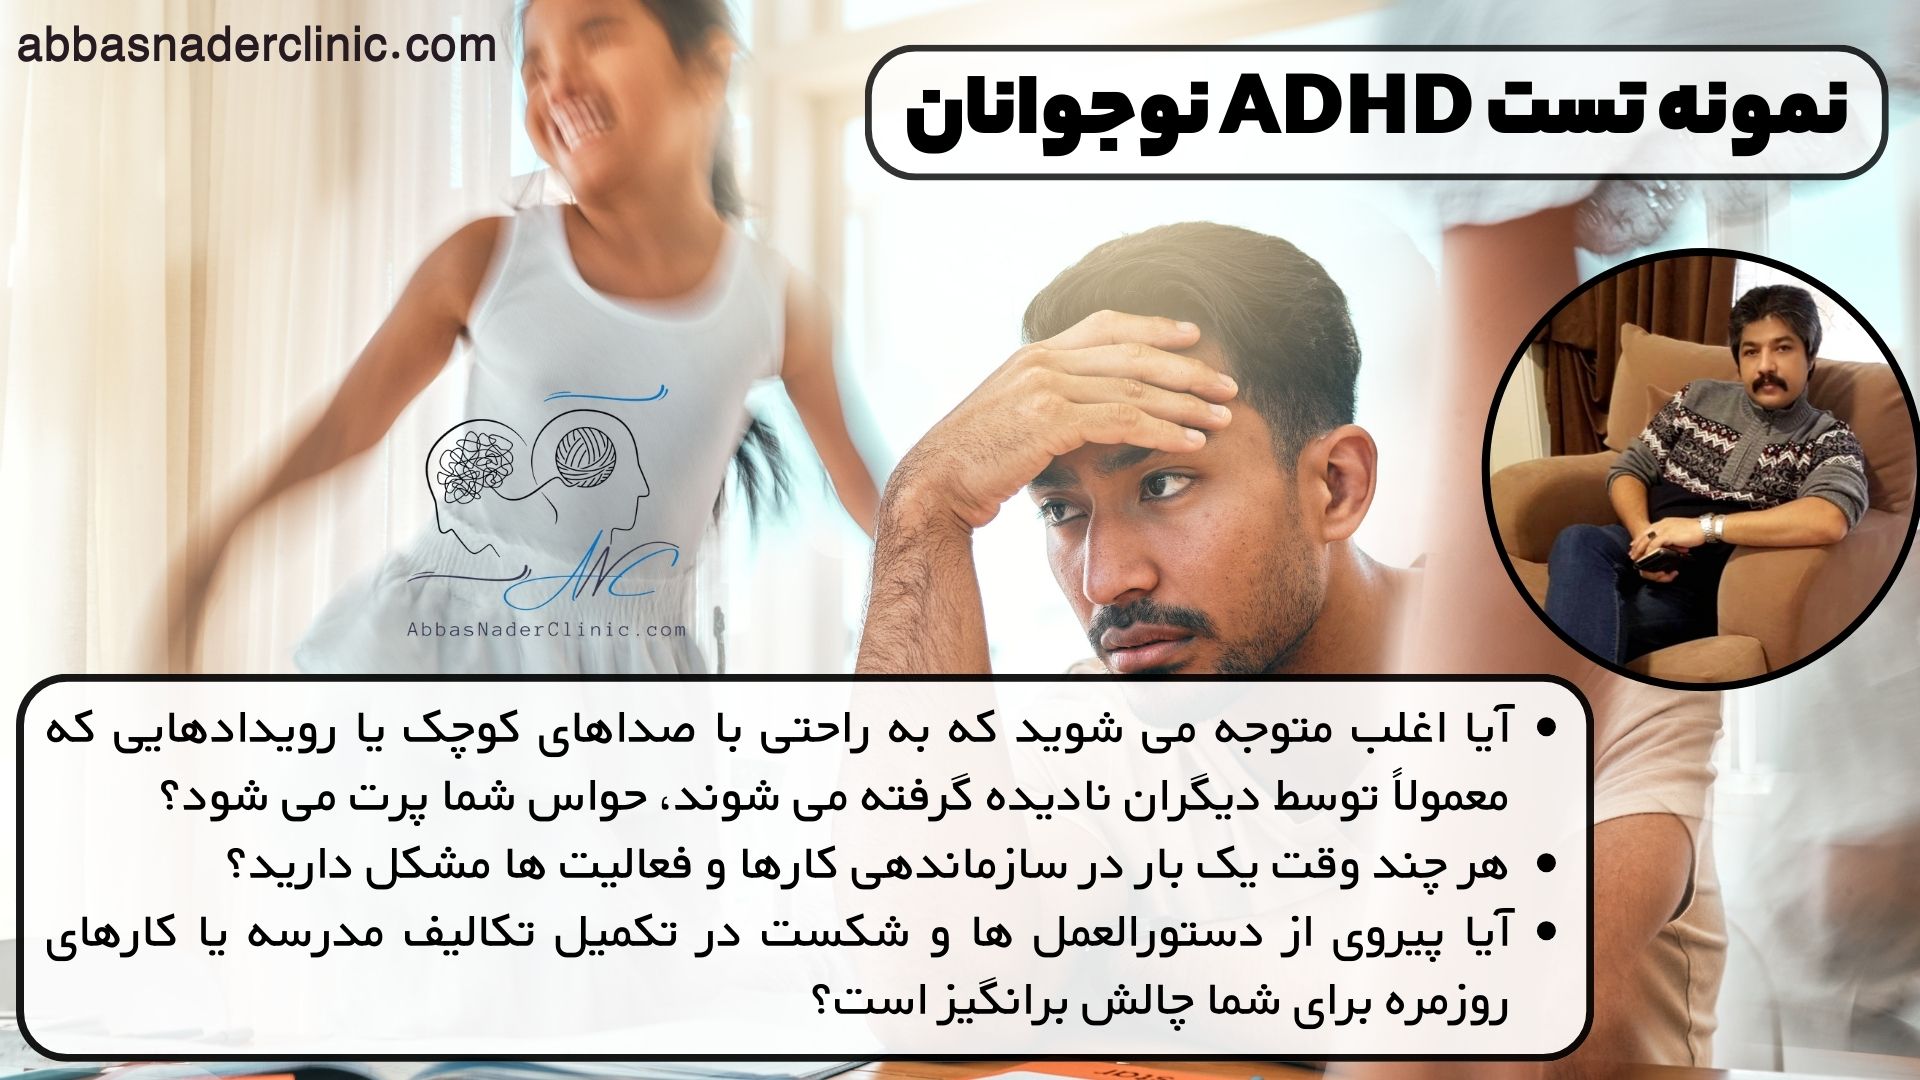 نمونه تست ADHD نوجوانان